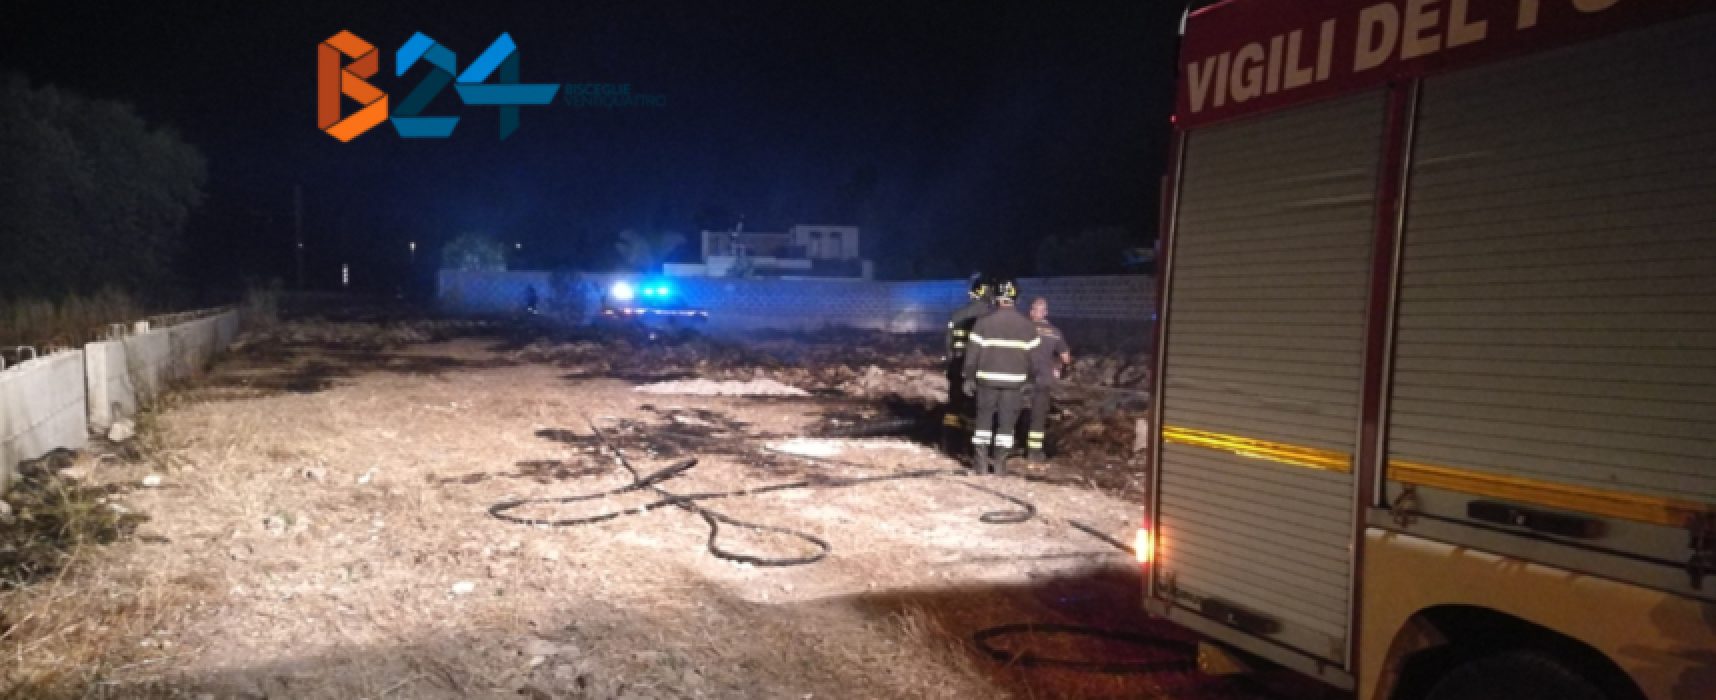 Incendio nella notte in terreno privato nei pressi dell’ospedale